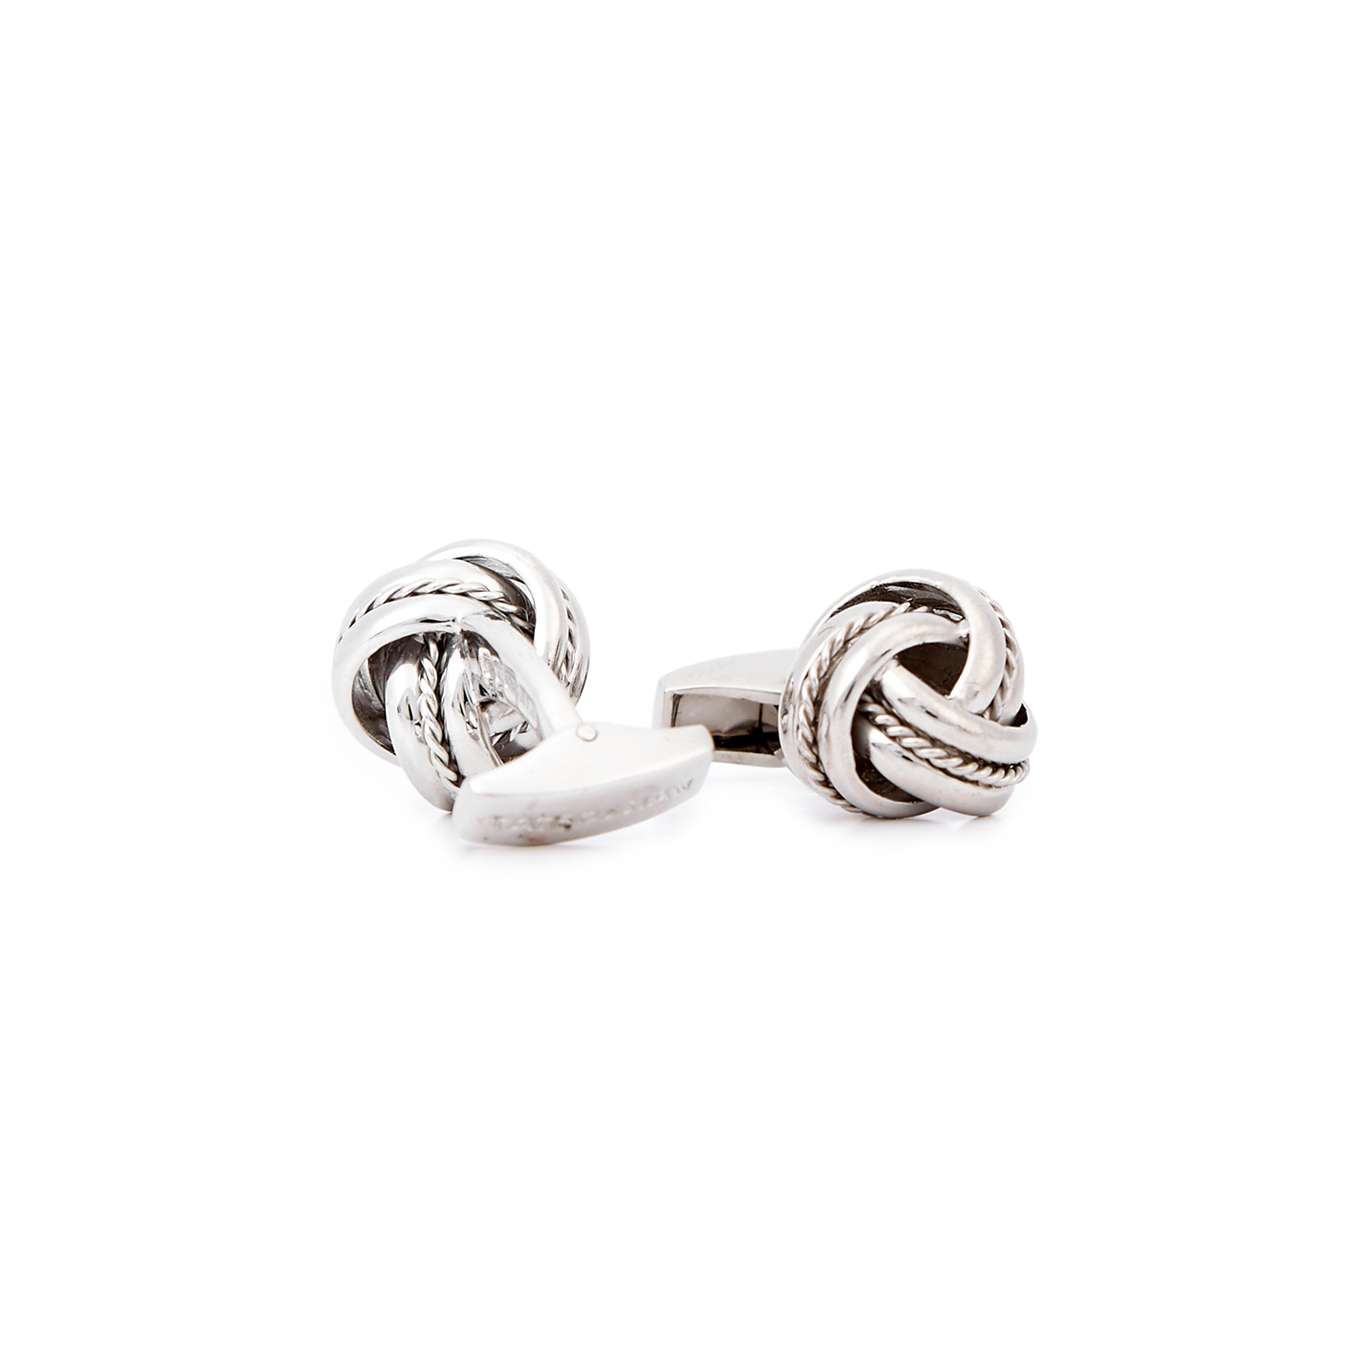 Tateossian Classic Knot Sterling Silver Cufflinks